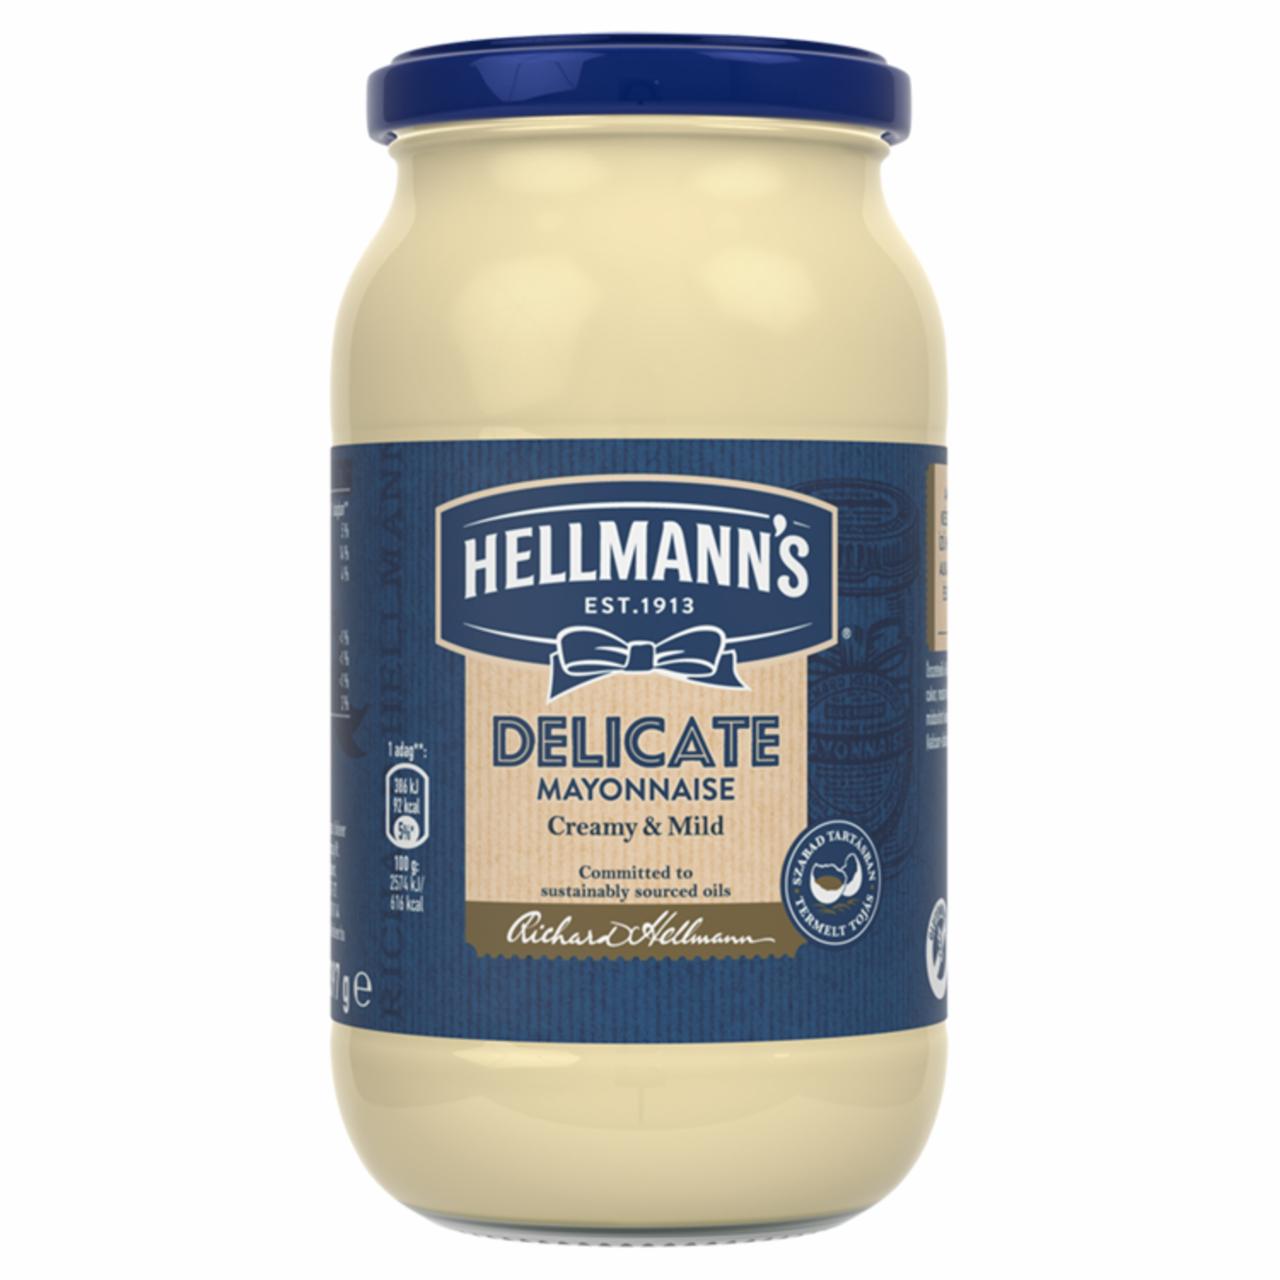 Képek - Hellmann's Delicate üveges majonéz 397 g 